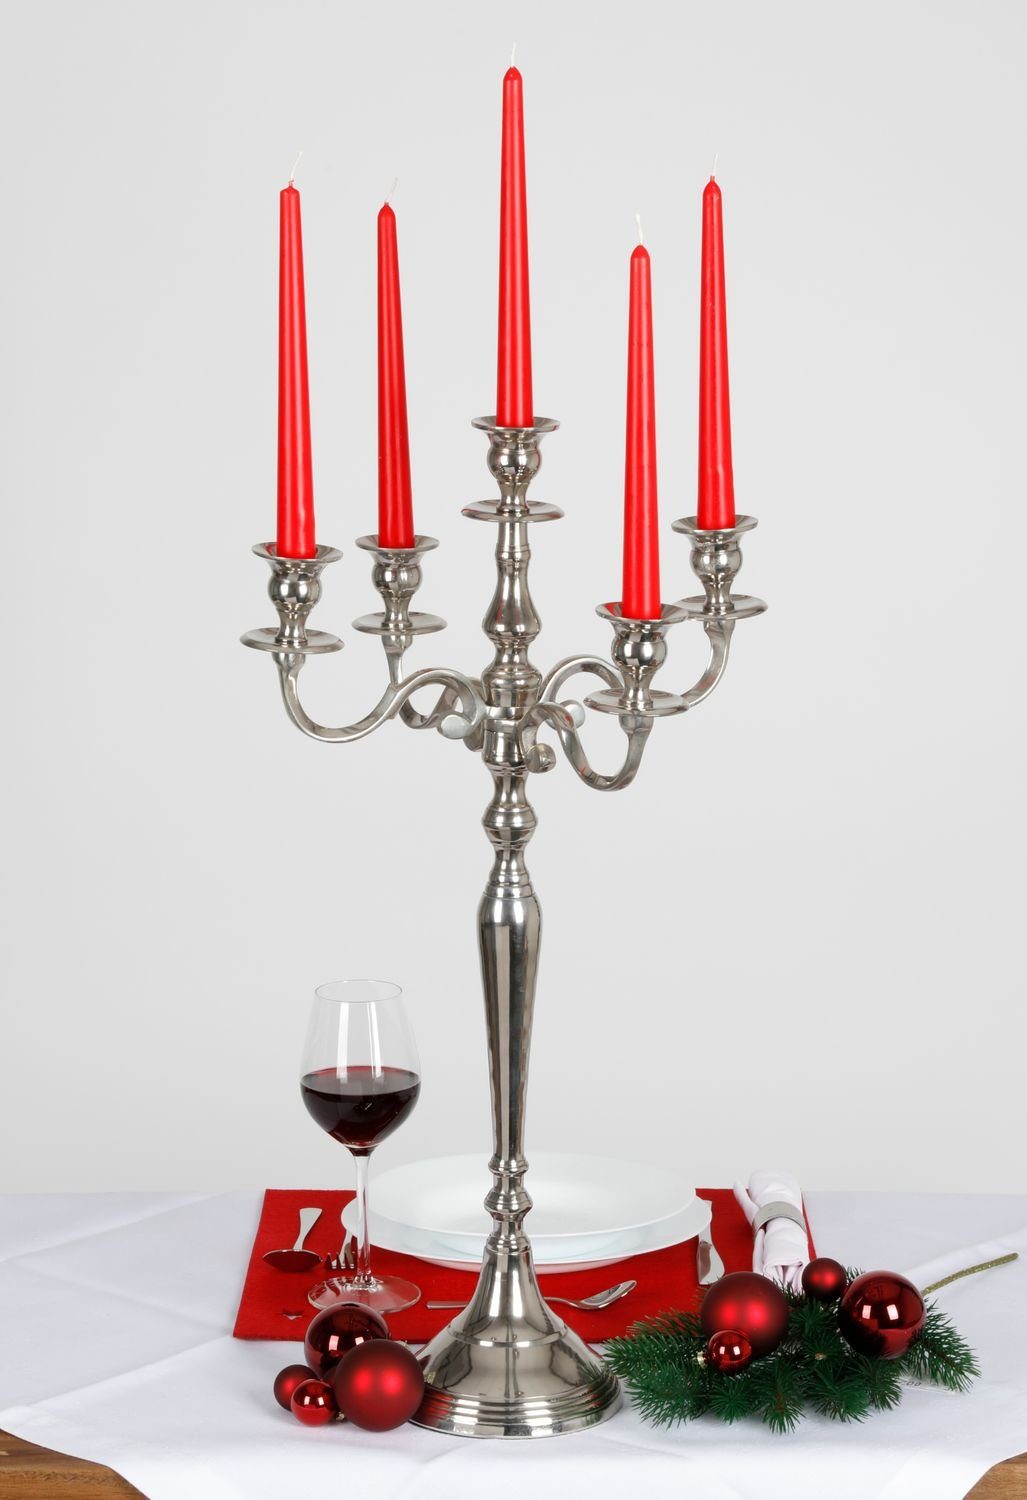 63cm Stand Kerzenständer BURI Kerzenständer Halter Kerzen Kerzenhalter 5-armig 2x Ständer